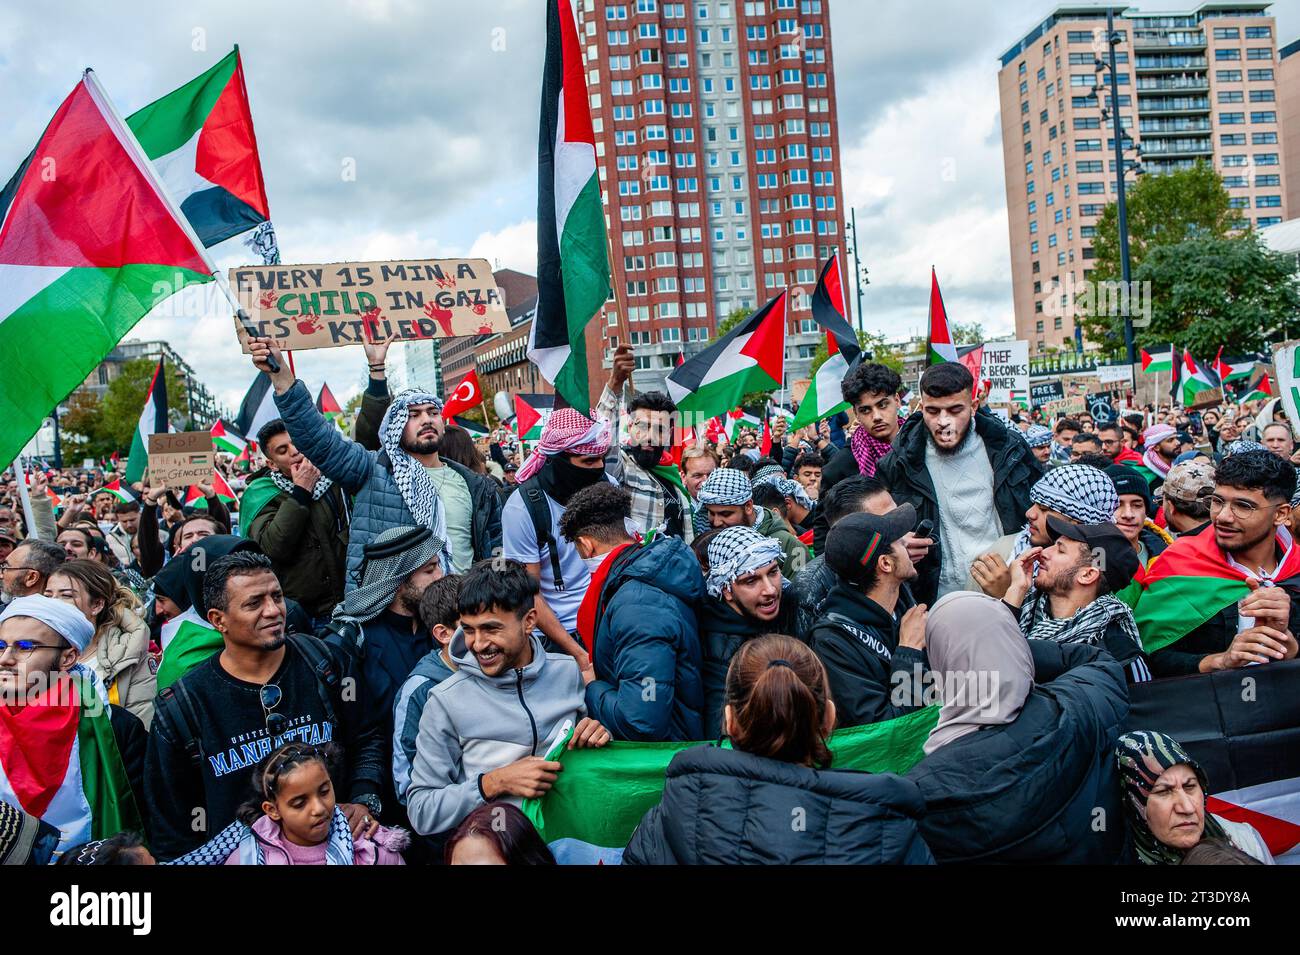 Oktober, Rotterdam. Palästinenser und ihre Unterstützer protestieren immer wieder, um die Regierung Israels zu verurteilen und Solidarität mit dem palästinensischen Volk zum Ausdruck zu bringen. Rund 5.000 Demonstranten versammelten sich in Trauer, Wut und Solidarität wegen der jüngsten Eskalation des israelisch-palästinensischen Konflikts und der beunruhigenden Ereignisse in Gaza. Stockfoto